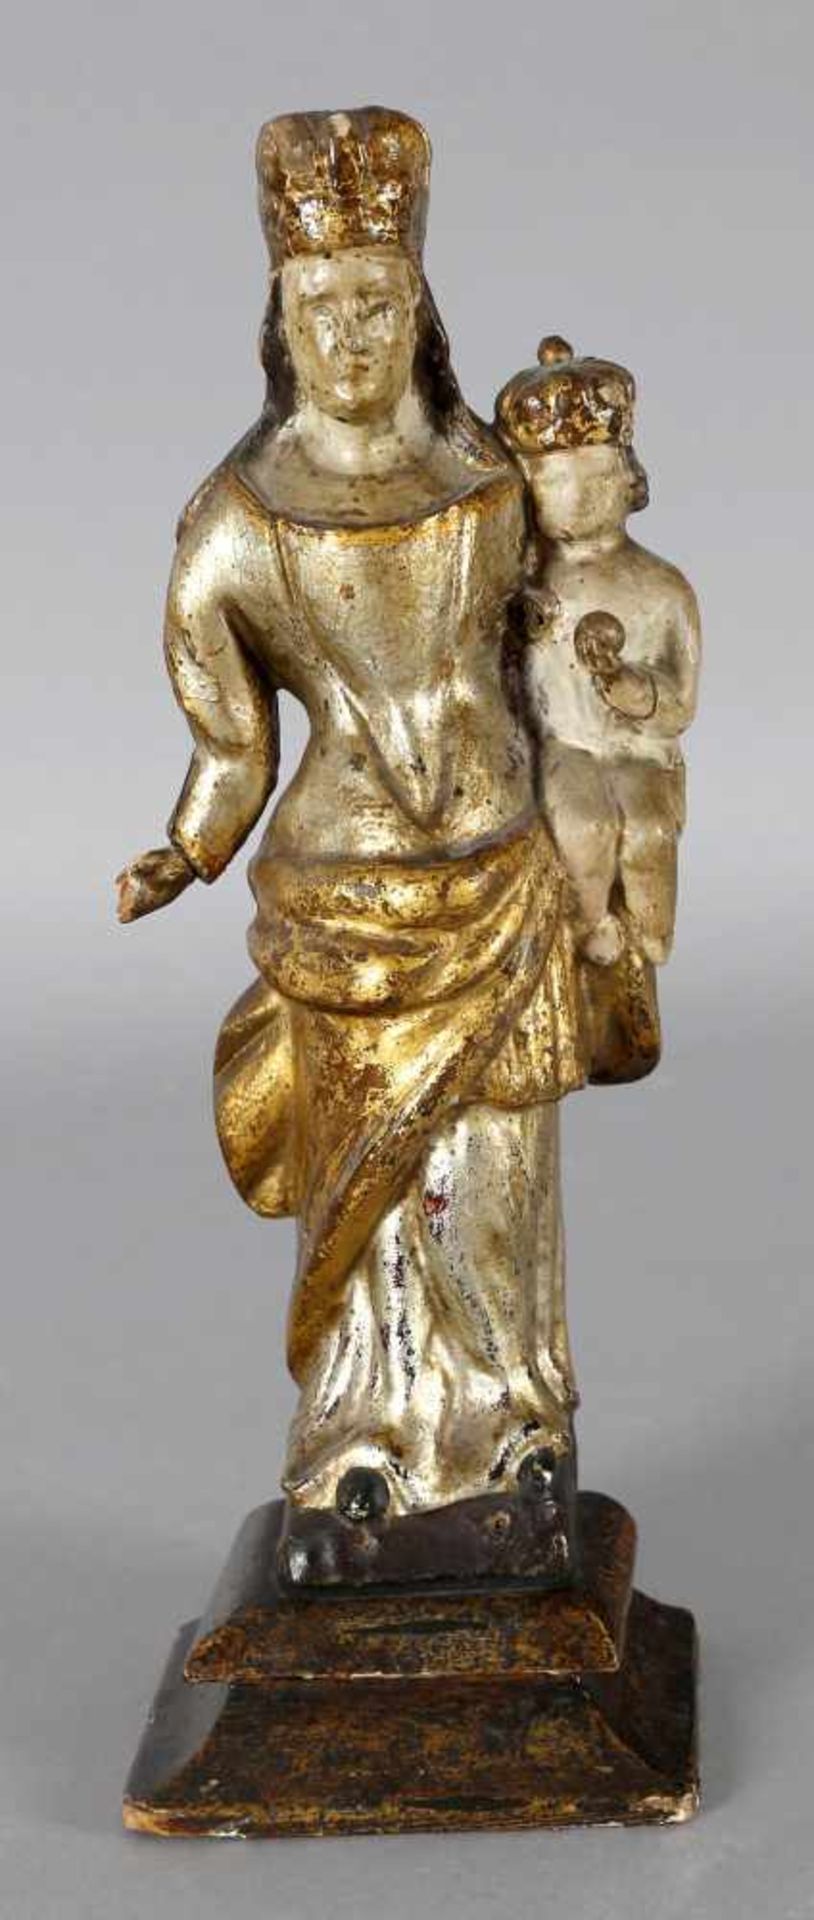 Madonna mit dem Jesuskind, wohl 17. Jh.Holz geschnitzt, Standfigur mit um die Hüften geschlungenem